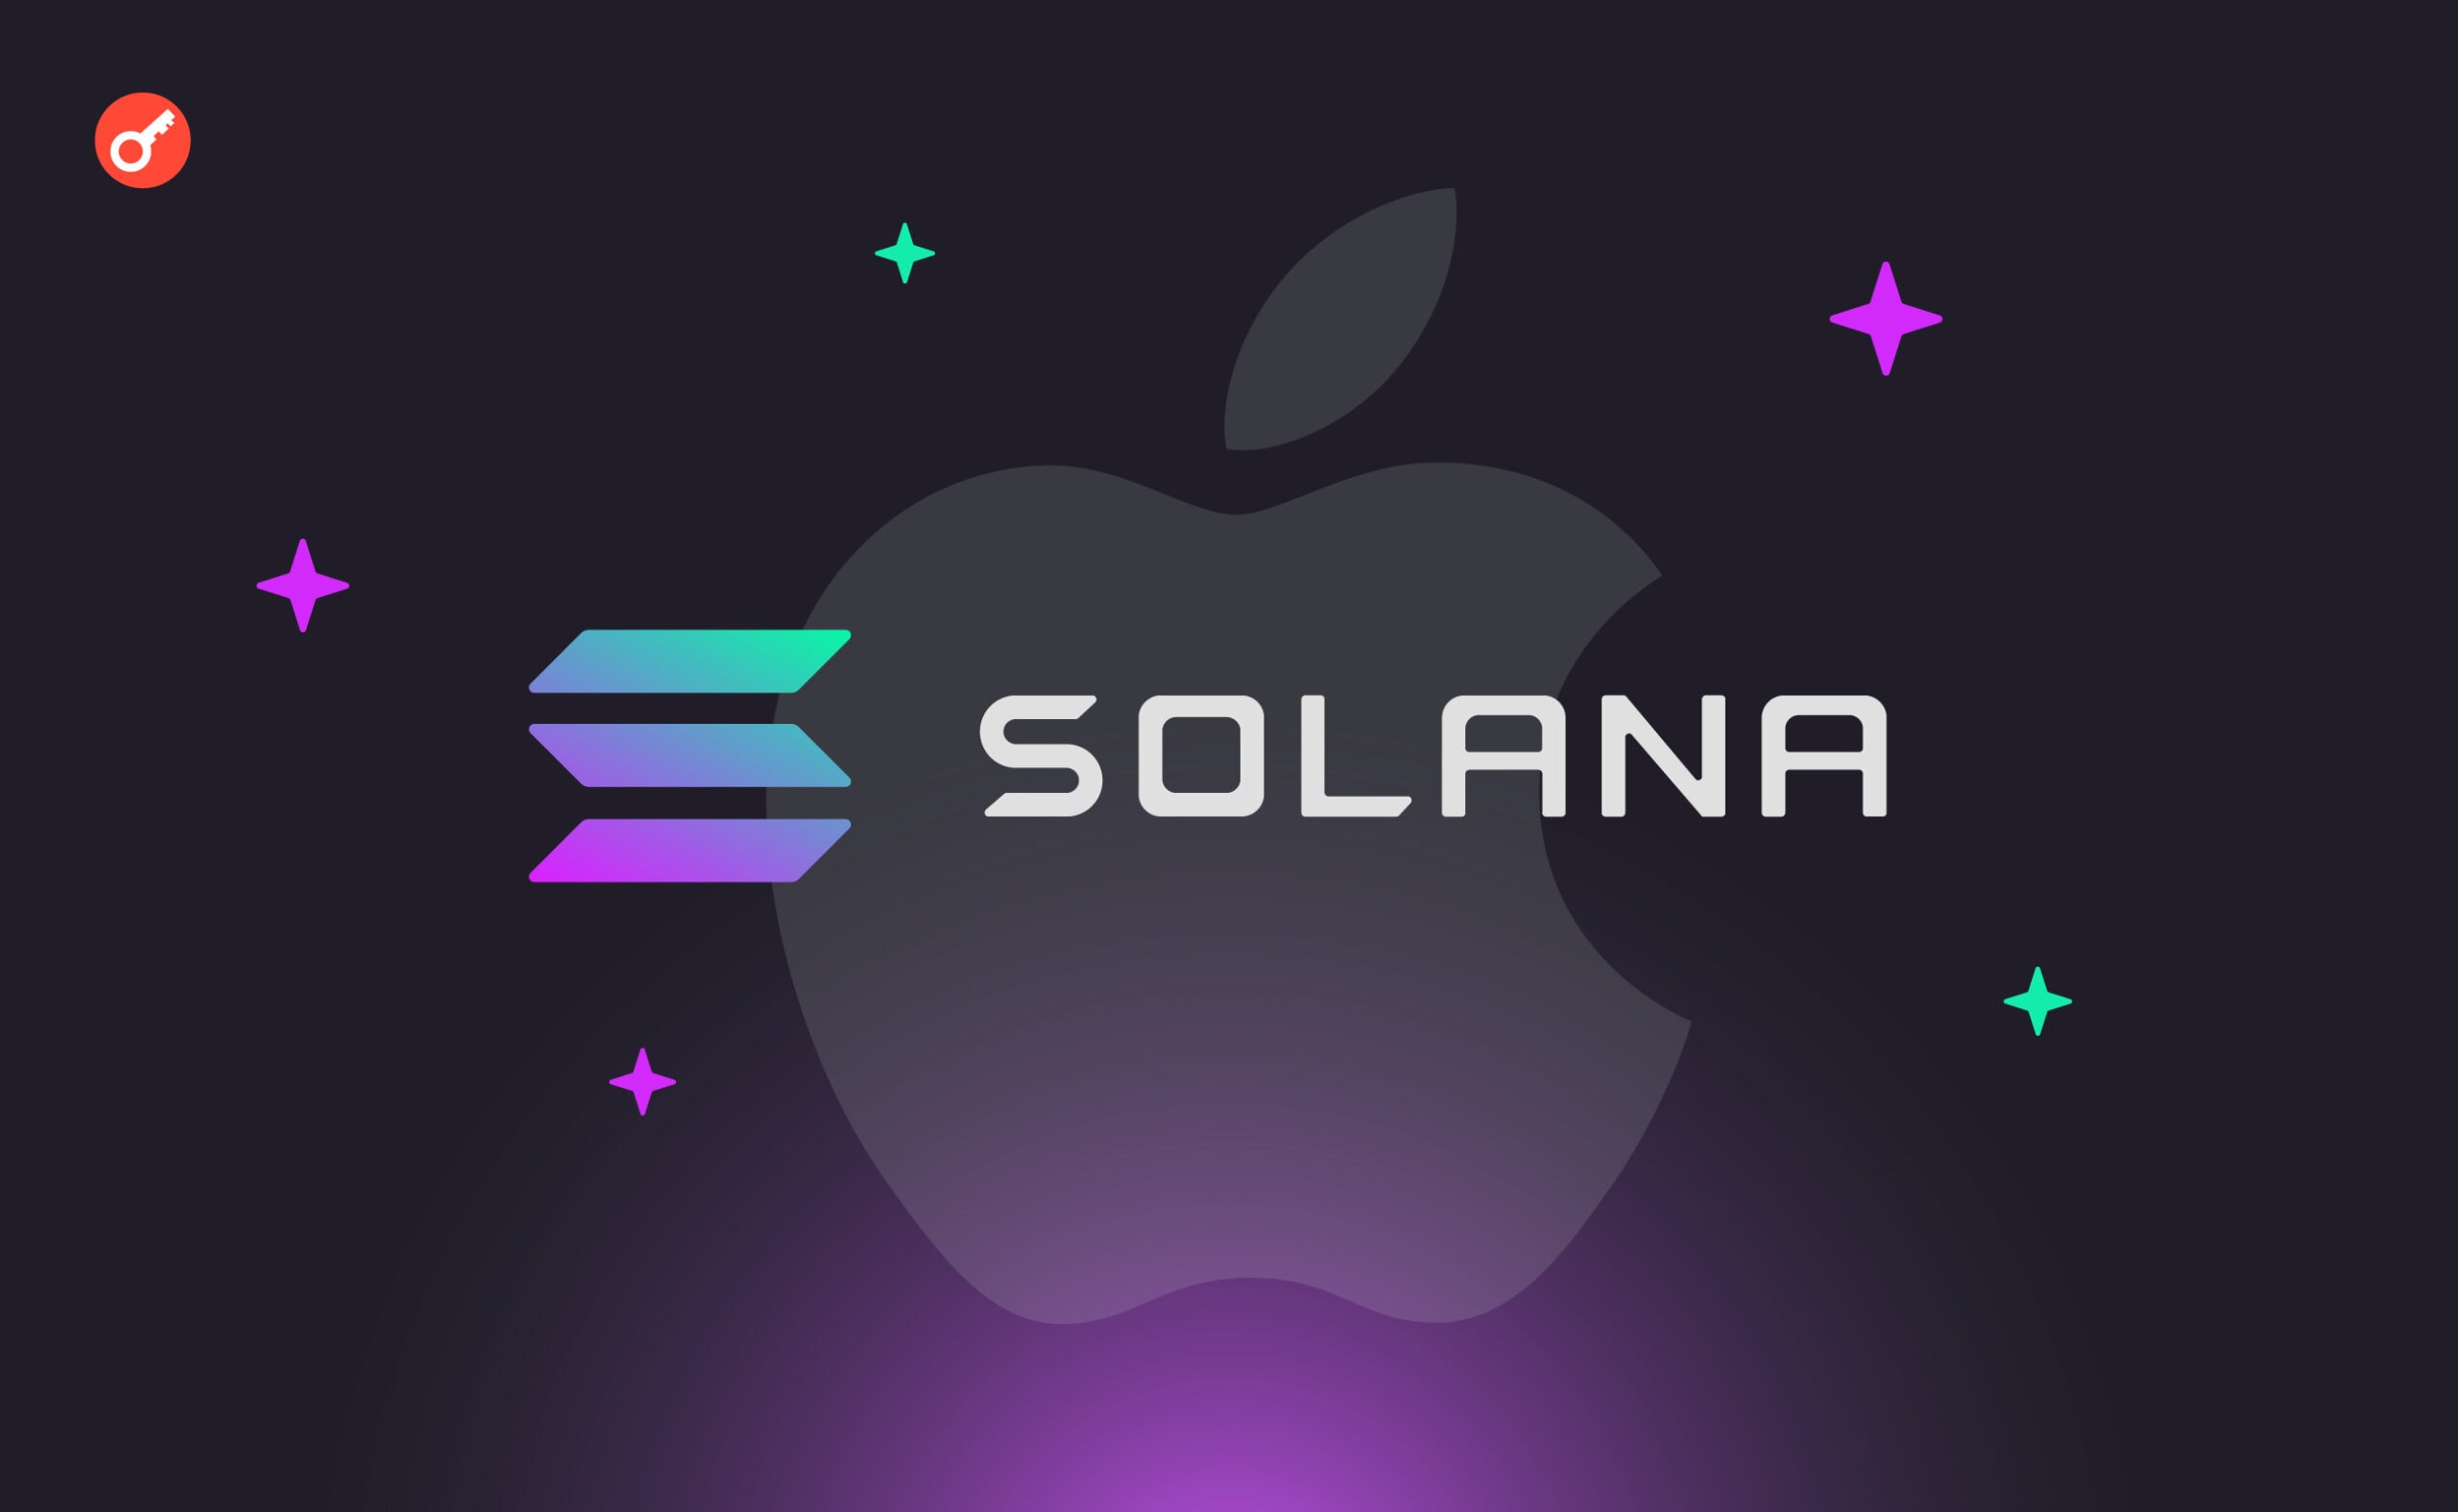 Співзасновник Solana назвав проект «новим Apple», але тільки у сфері криптовалют. Головний колаж новини.